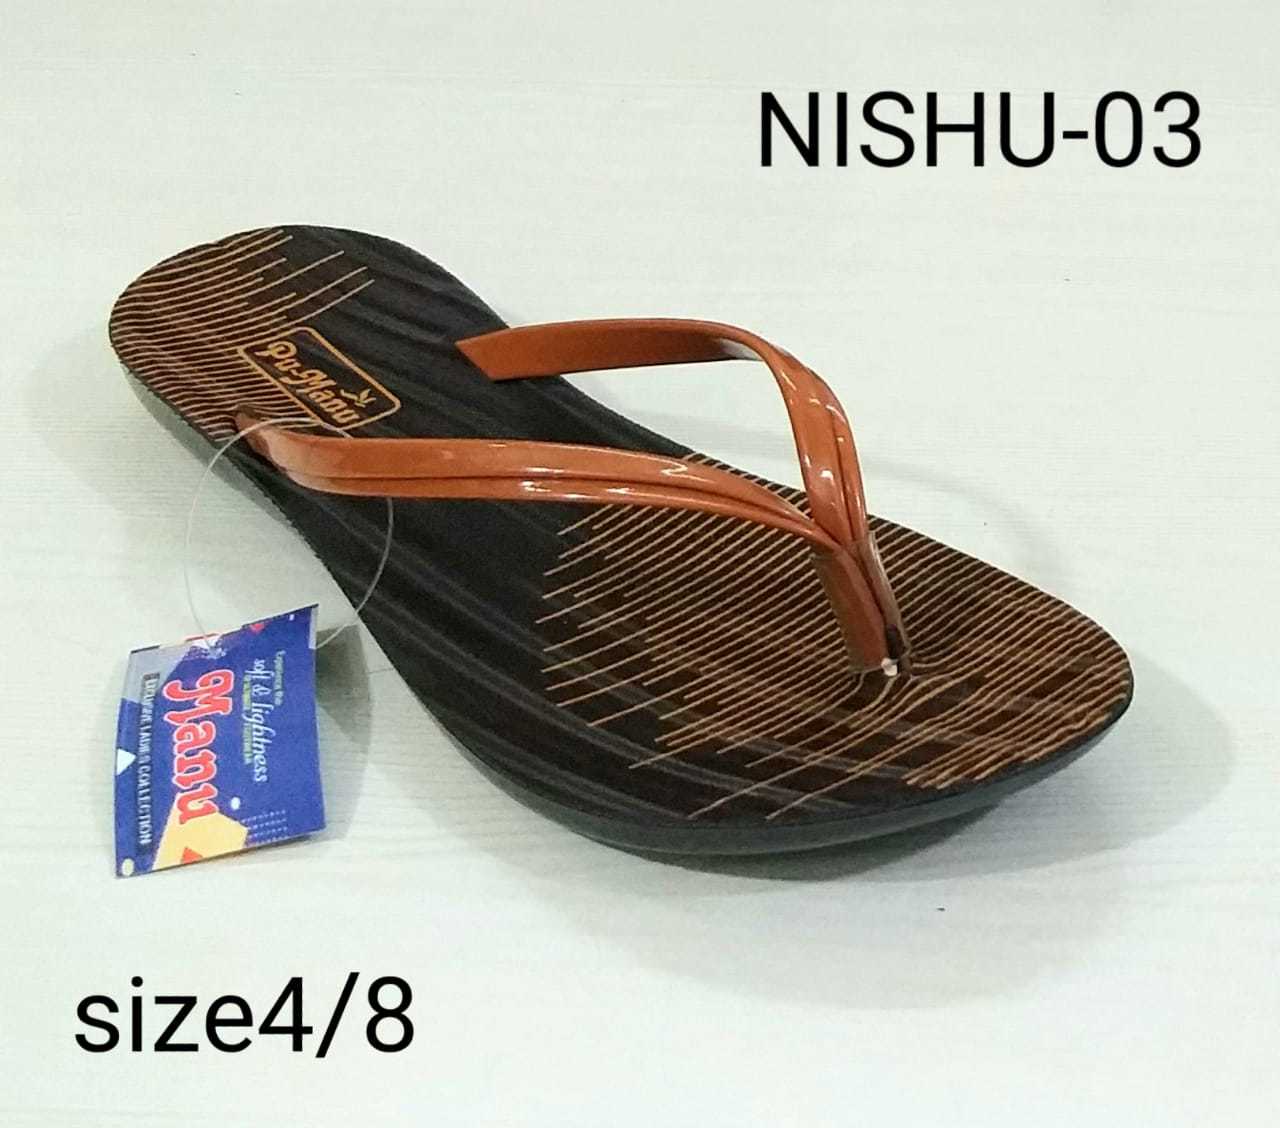 Nishu series